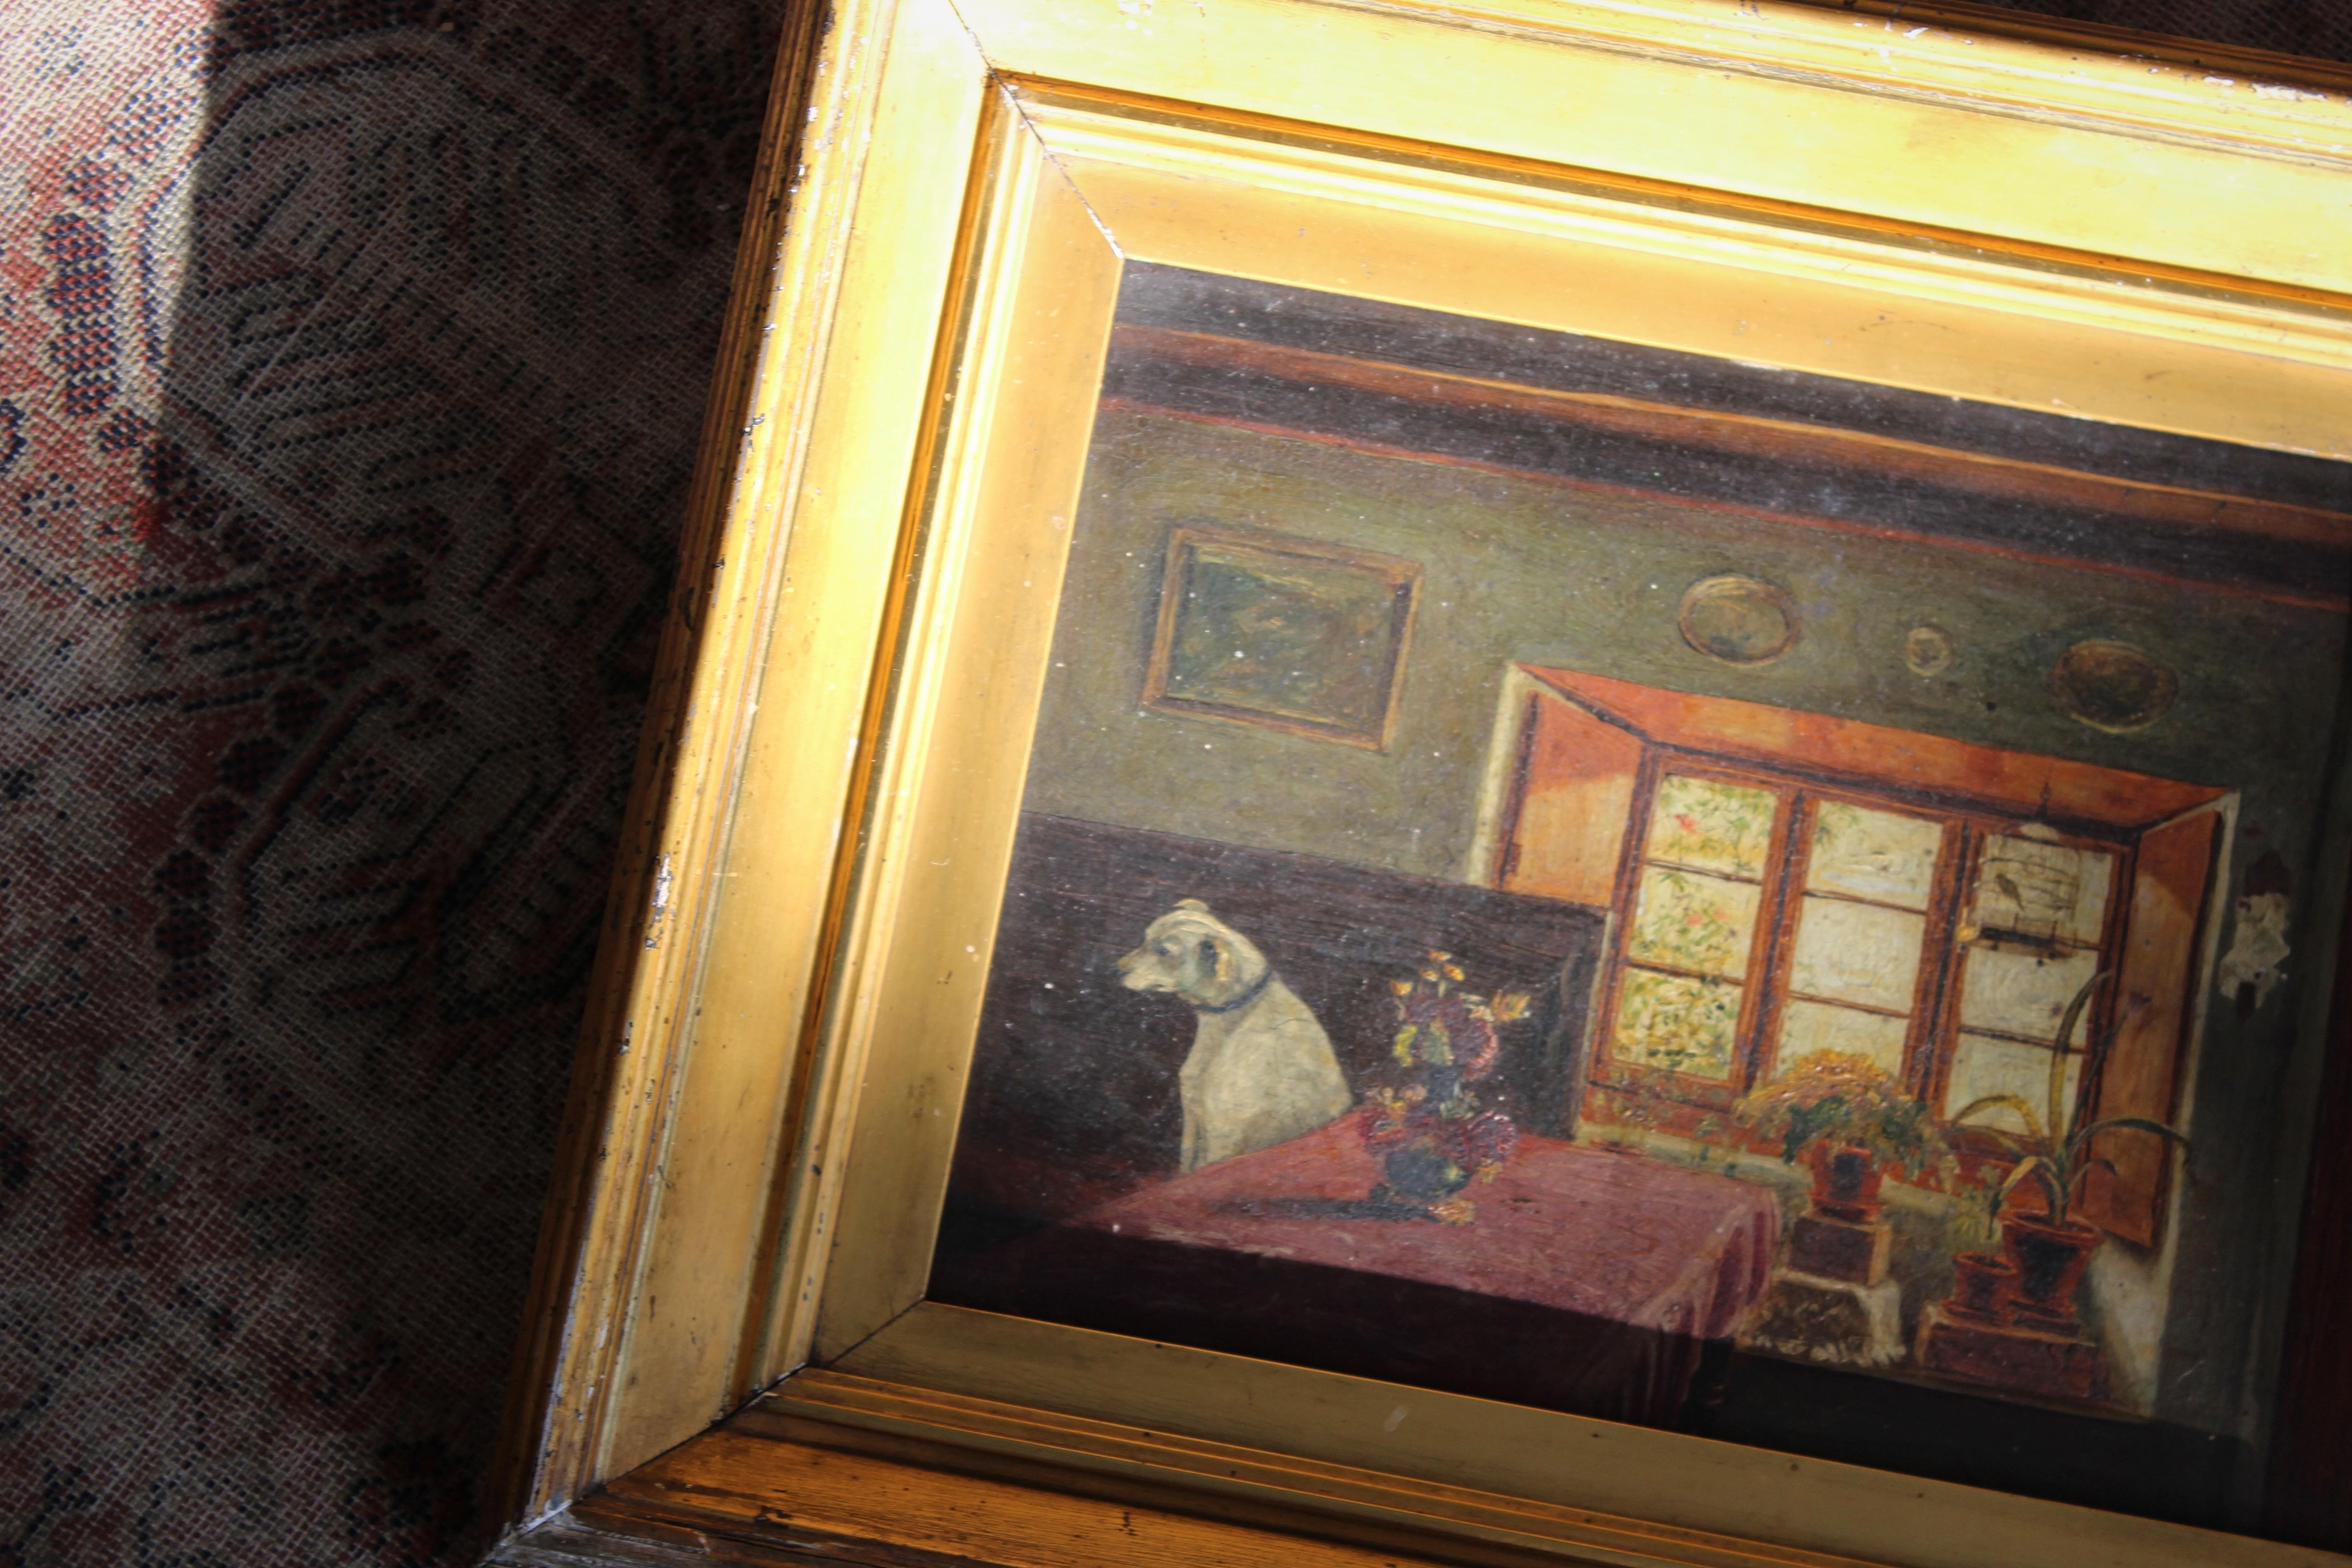 Une charmante peinture à l'huile sur panneau représentant un chien réfléchissant dans la cuisine d'une maison de campagne. Craquelures liées à l'âge sur la surface peinte, quelques coups et abrasions sur le cadre en gesso doré. Mais dans l'ensemble